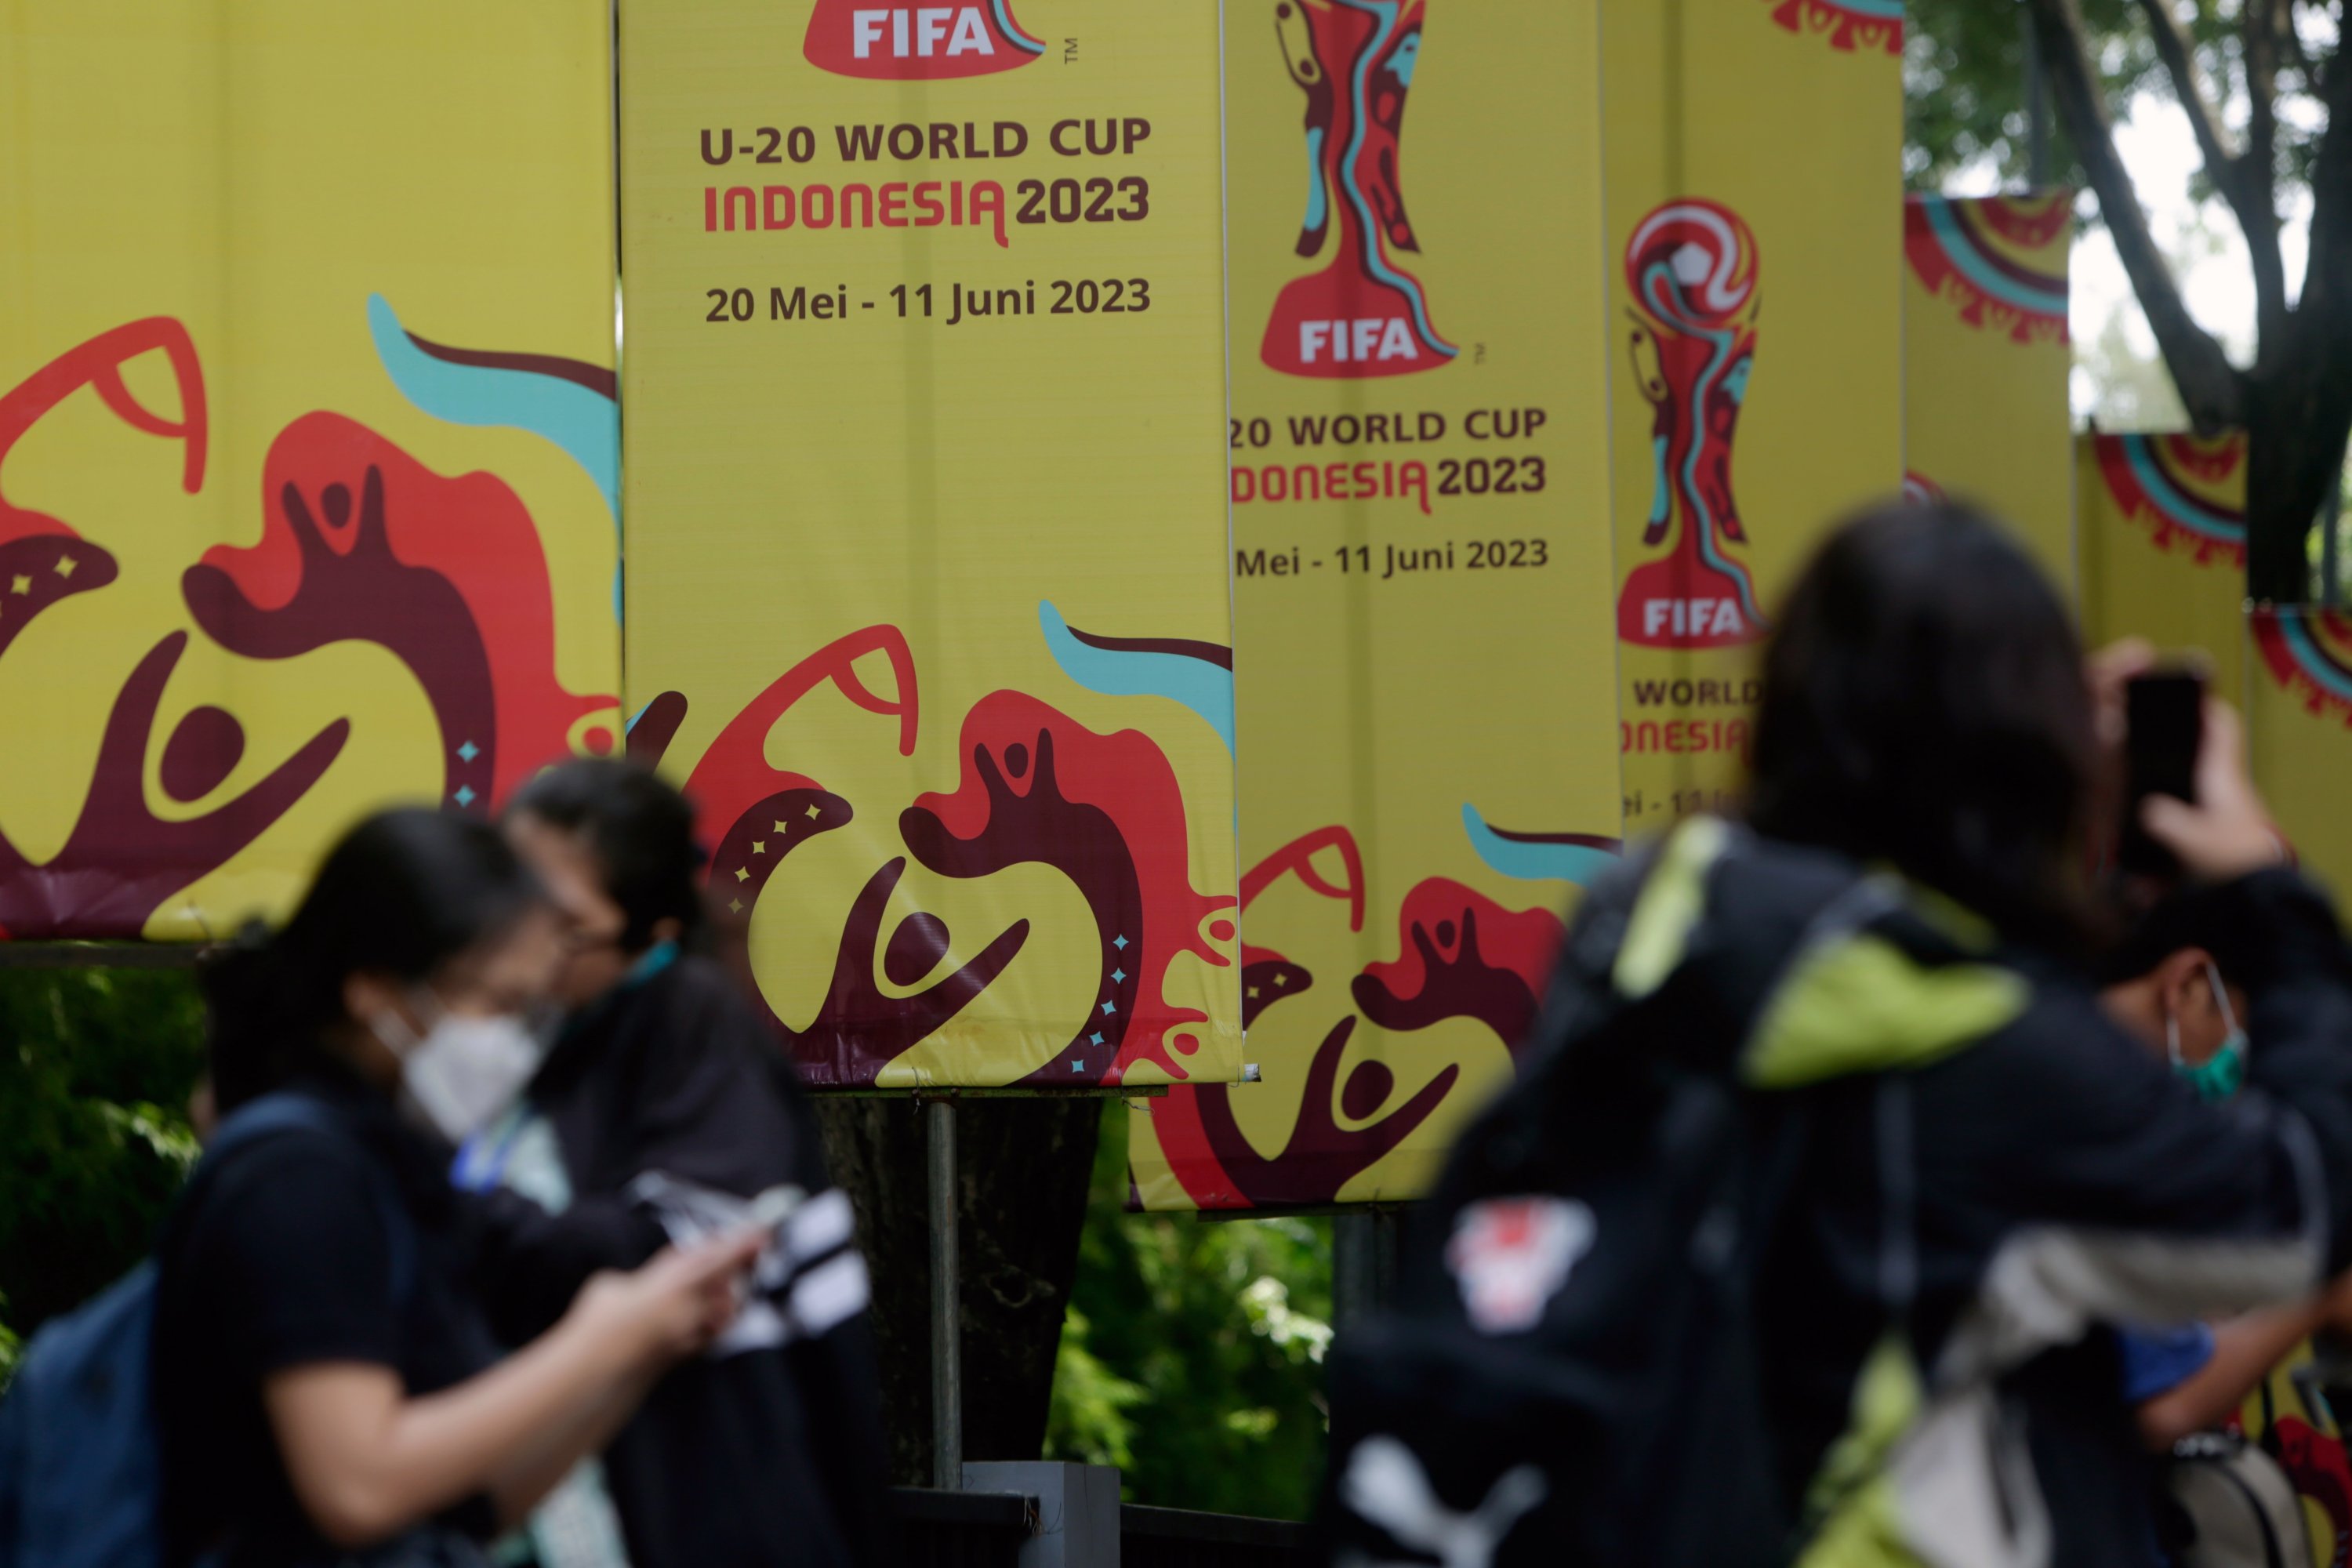 Para pekerja berdiri di depan spanduk Piala Dunia U-20 setelah FIFA mencabut status tuan rumah Indonesia untuk Piala Dunia U-20 2023, di arena olahraga, Jakarta, Indonesia, 30 Maret 2023. (Foto EPA)